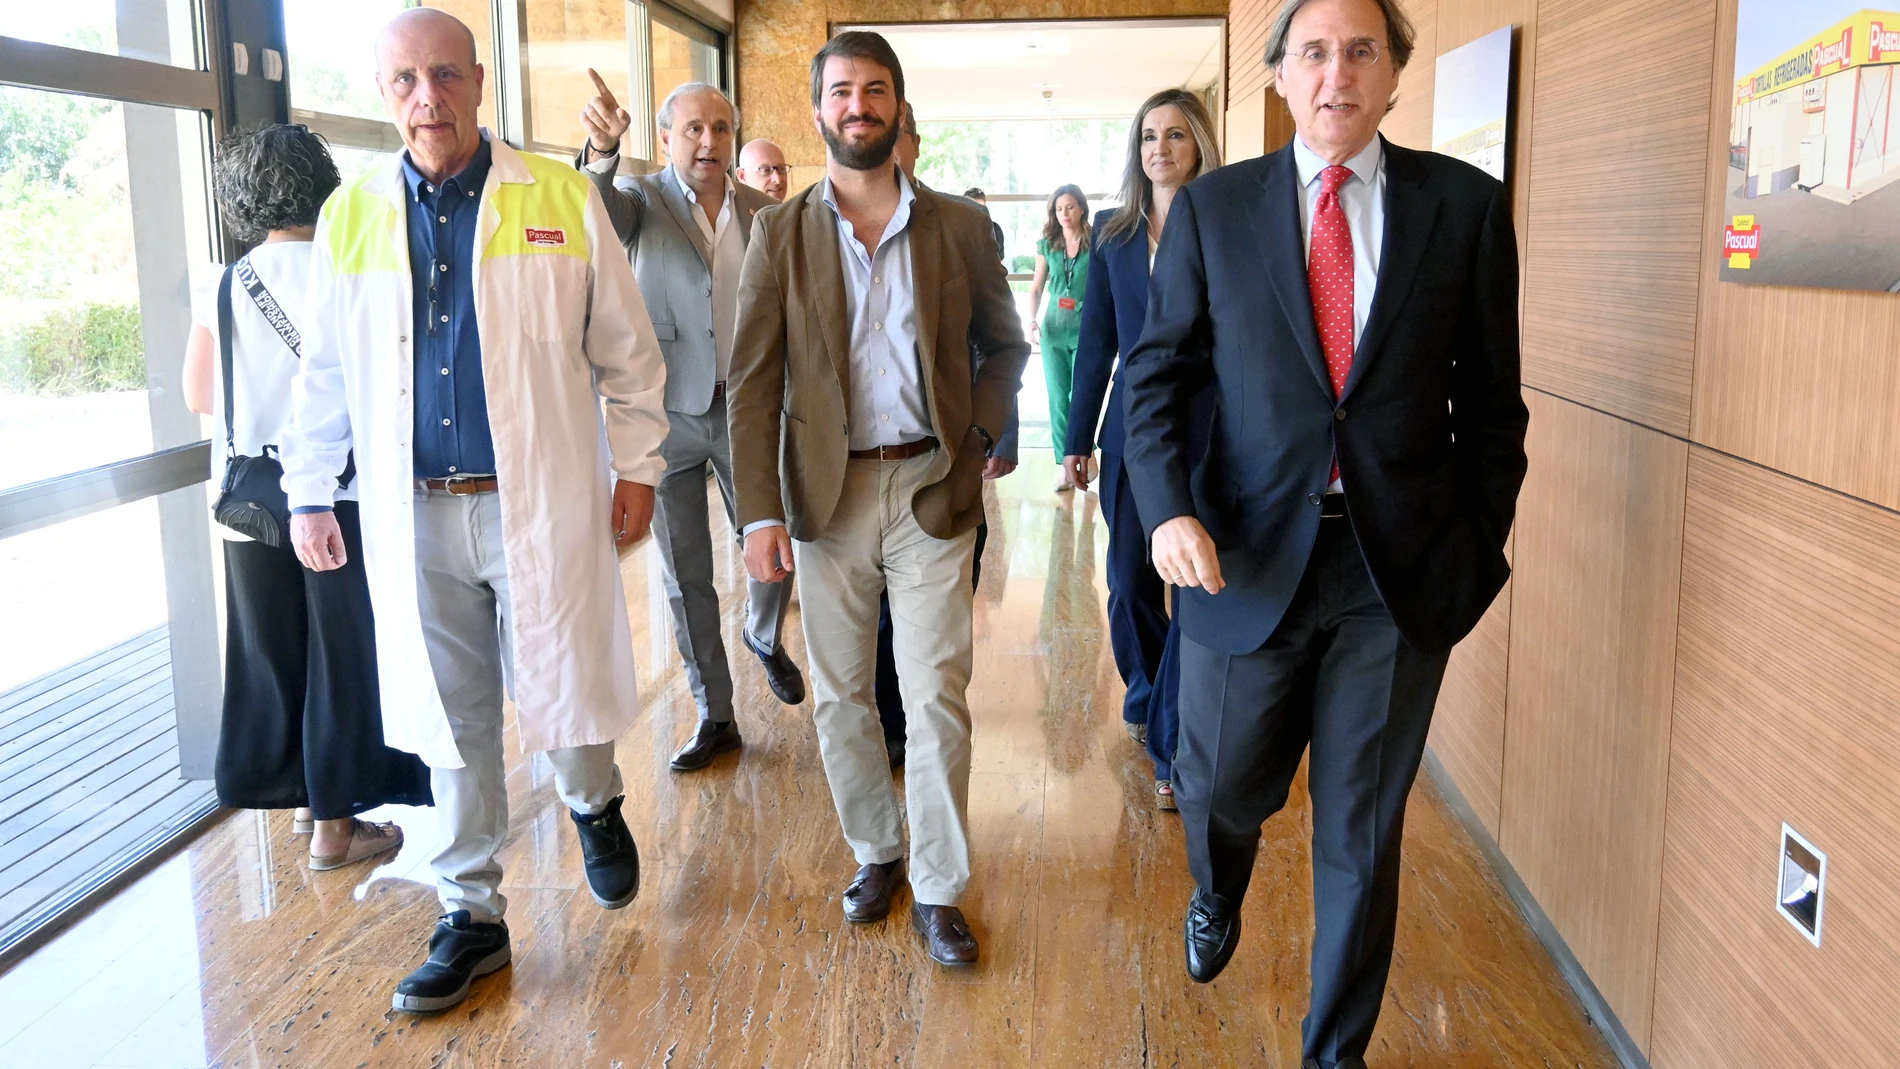 El vicepresidente de la Junta de Castilla y León, Juan García-Gallardo, visita las instalaciones fabriles de Pascual en Aranda de Duero